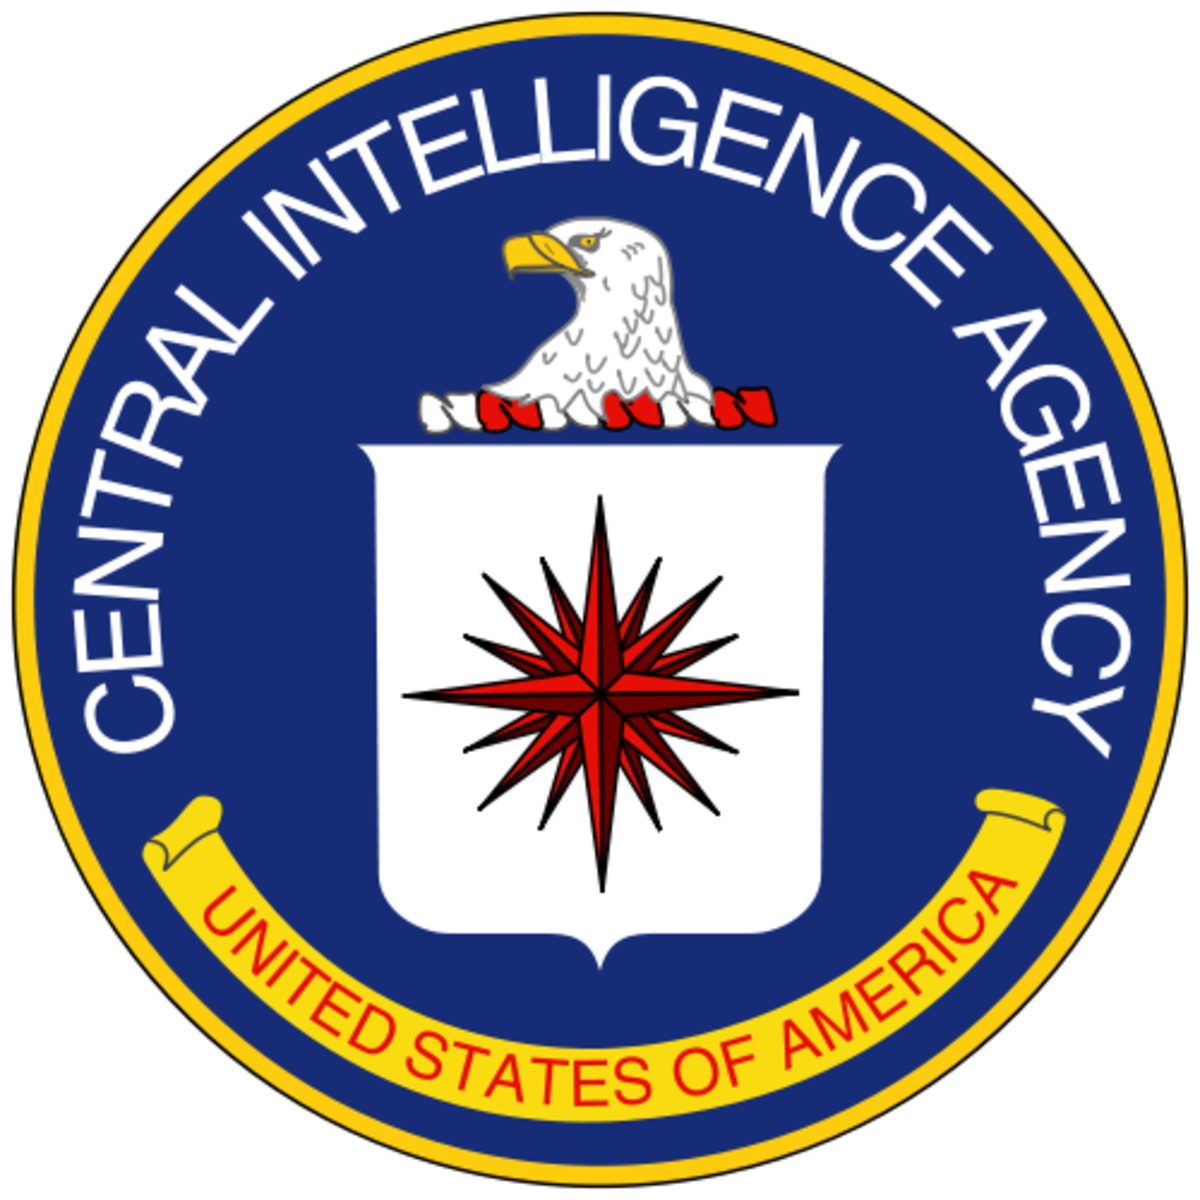 MKUltra: The CIA's Top Secret Mind Control Experiments